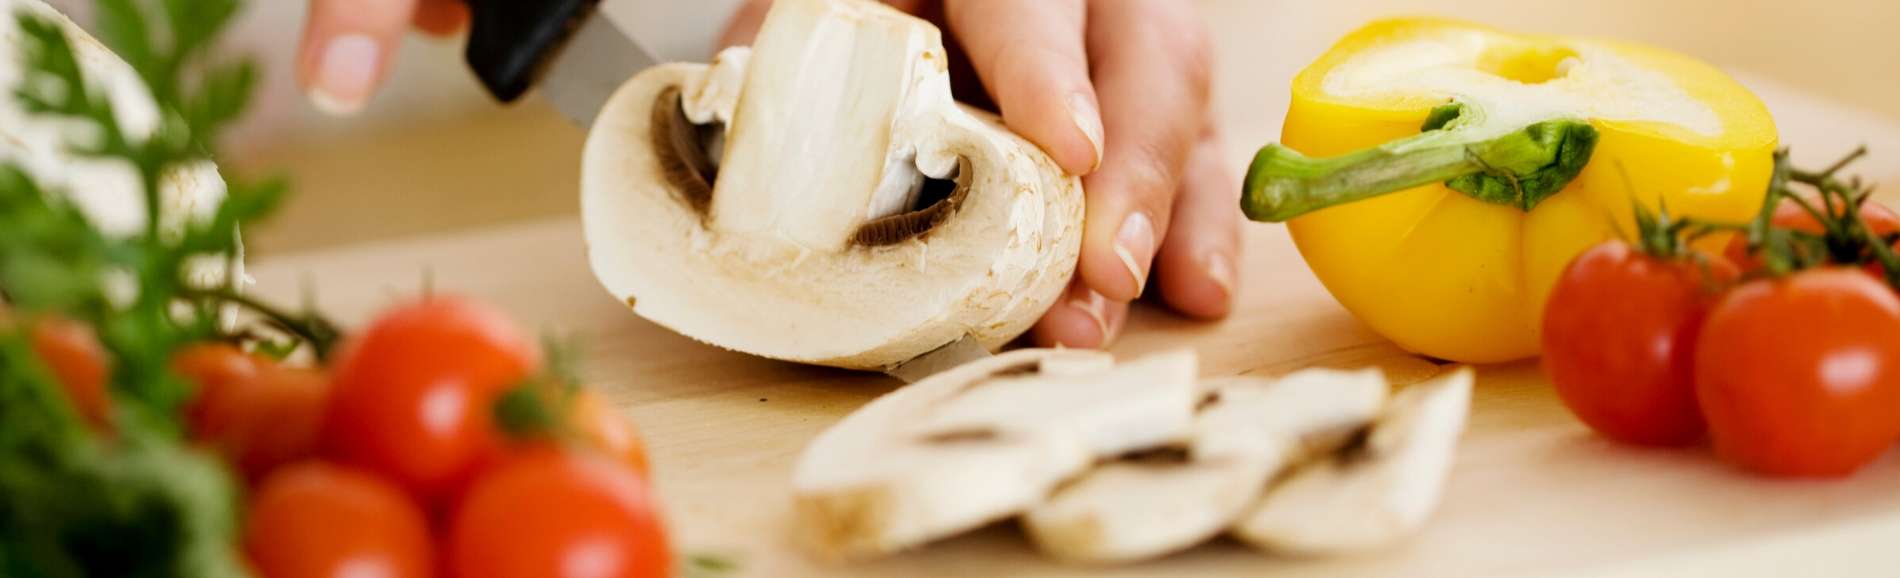 Hands slicing a mushroom